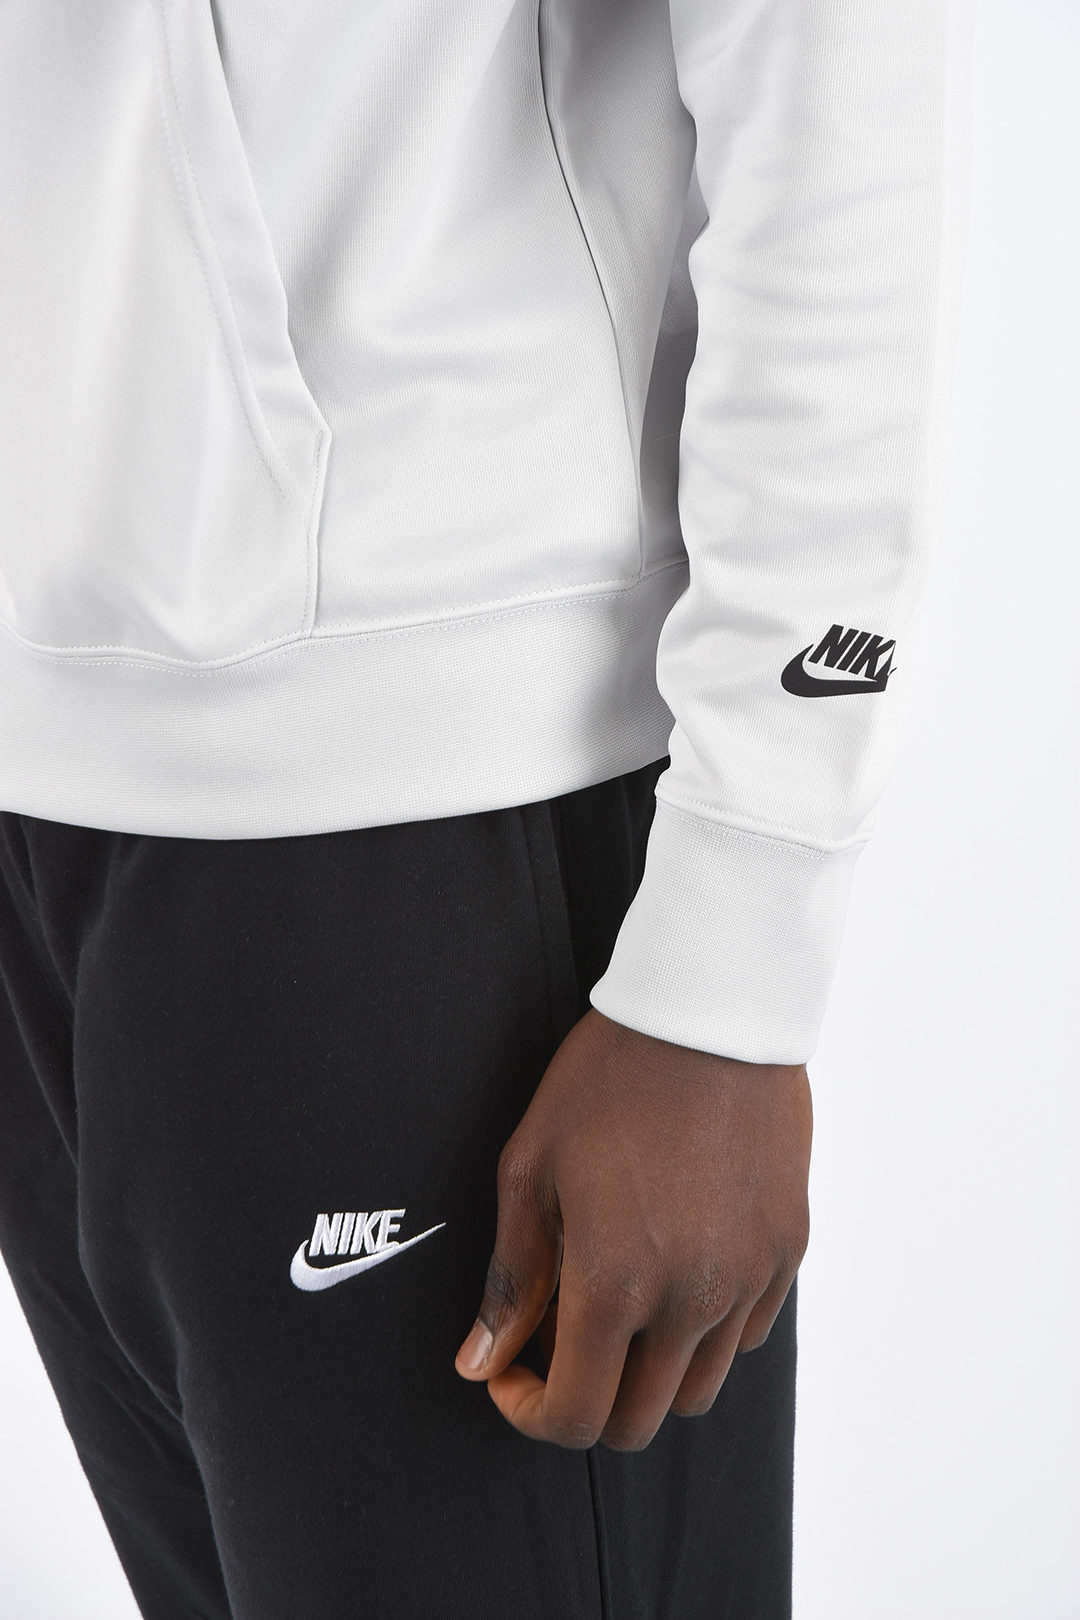 aftrekken Pastoor verbanning Nike Hoodie Sweatshirt men - Glamood Outlet